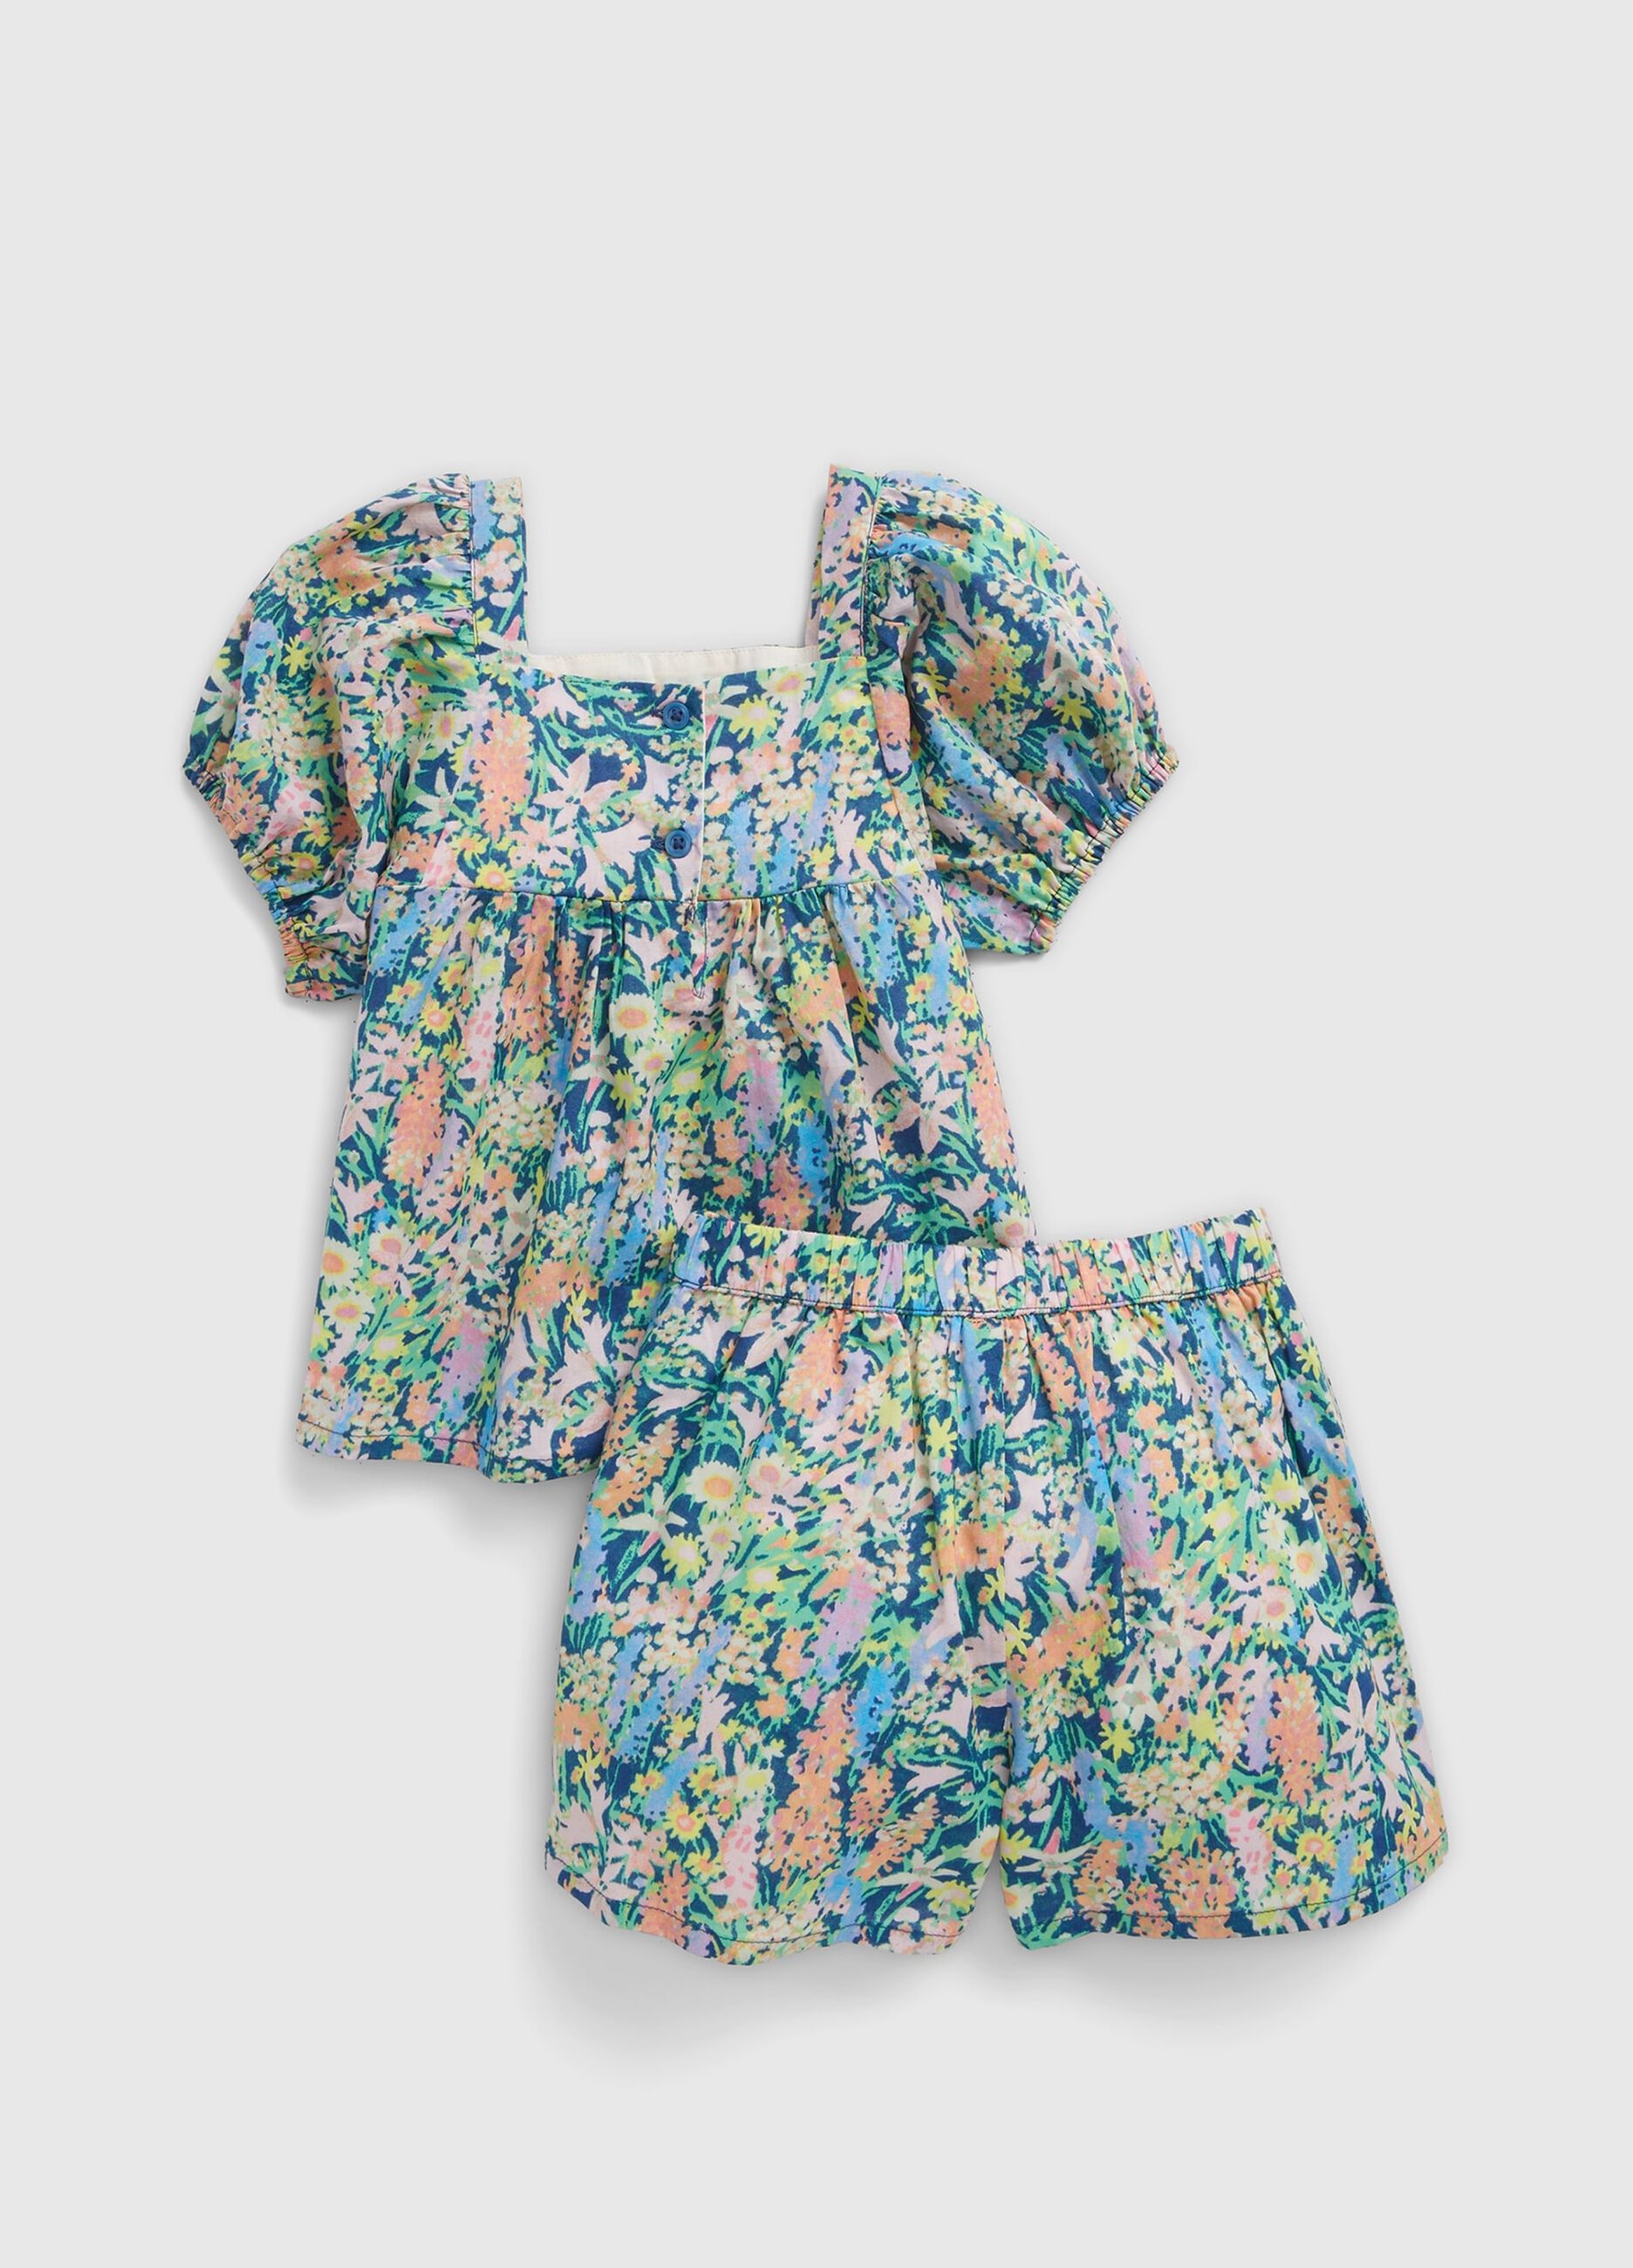 Conjunto blusa y shorts con estampado floral